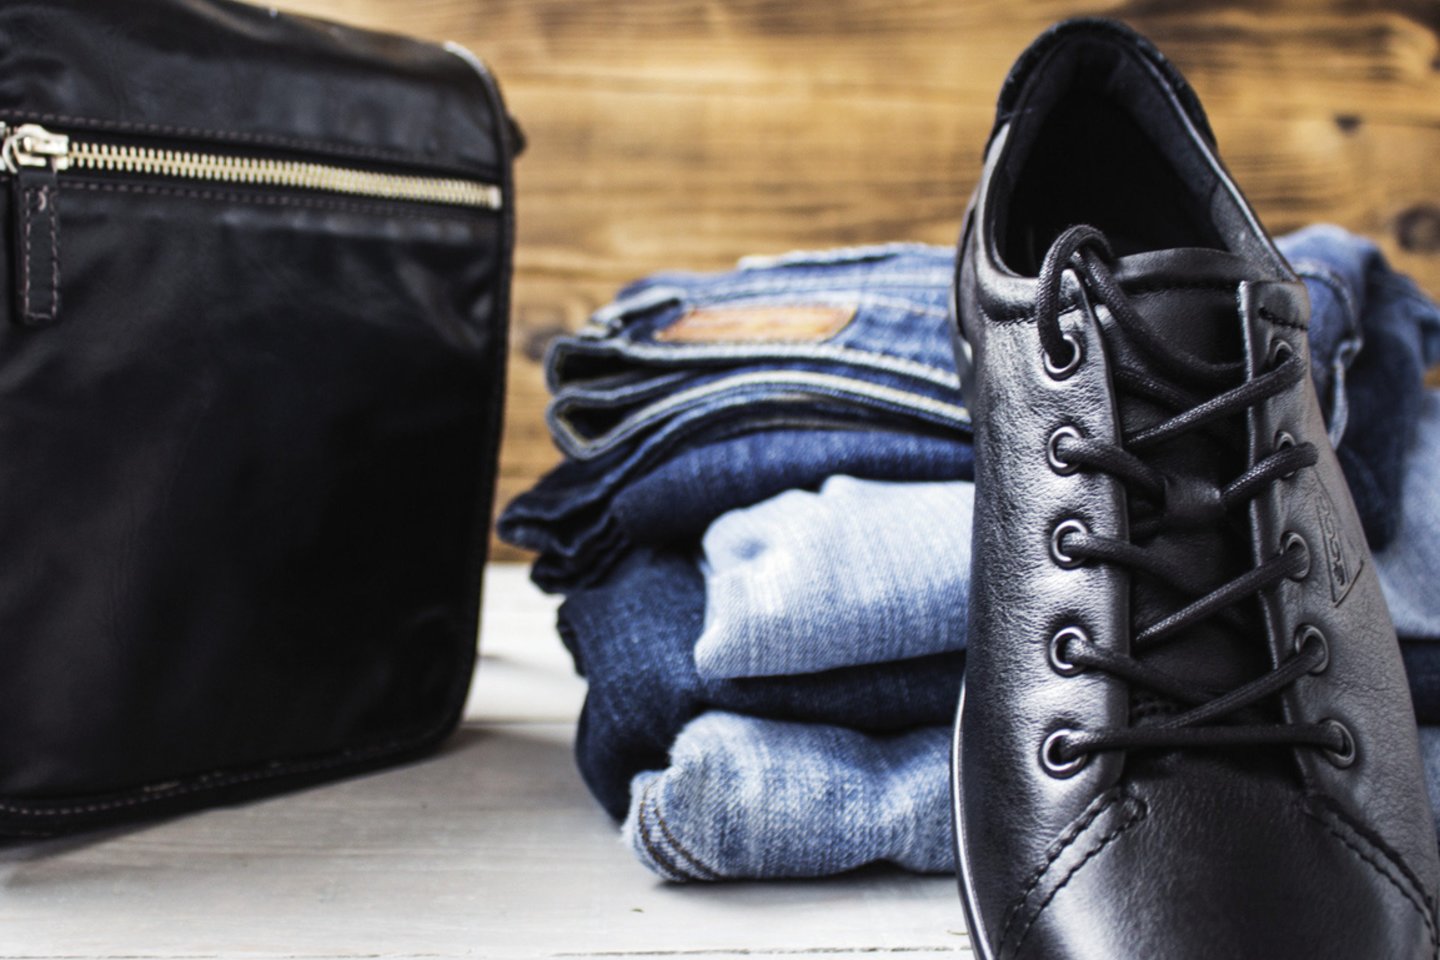  Nors džinsai visame pasaulyje pripažinti kaip laisvalaikio aprangos dalis, apsiavus juodus batus tos pačios kelnės atrodys gerokai rafinuočiau.<br> 123rf nuotr.